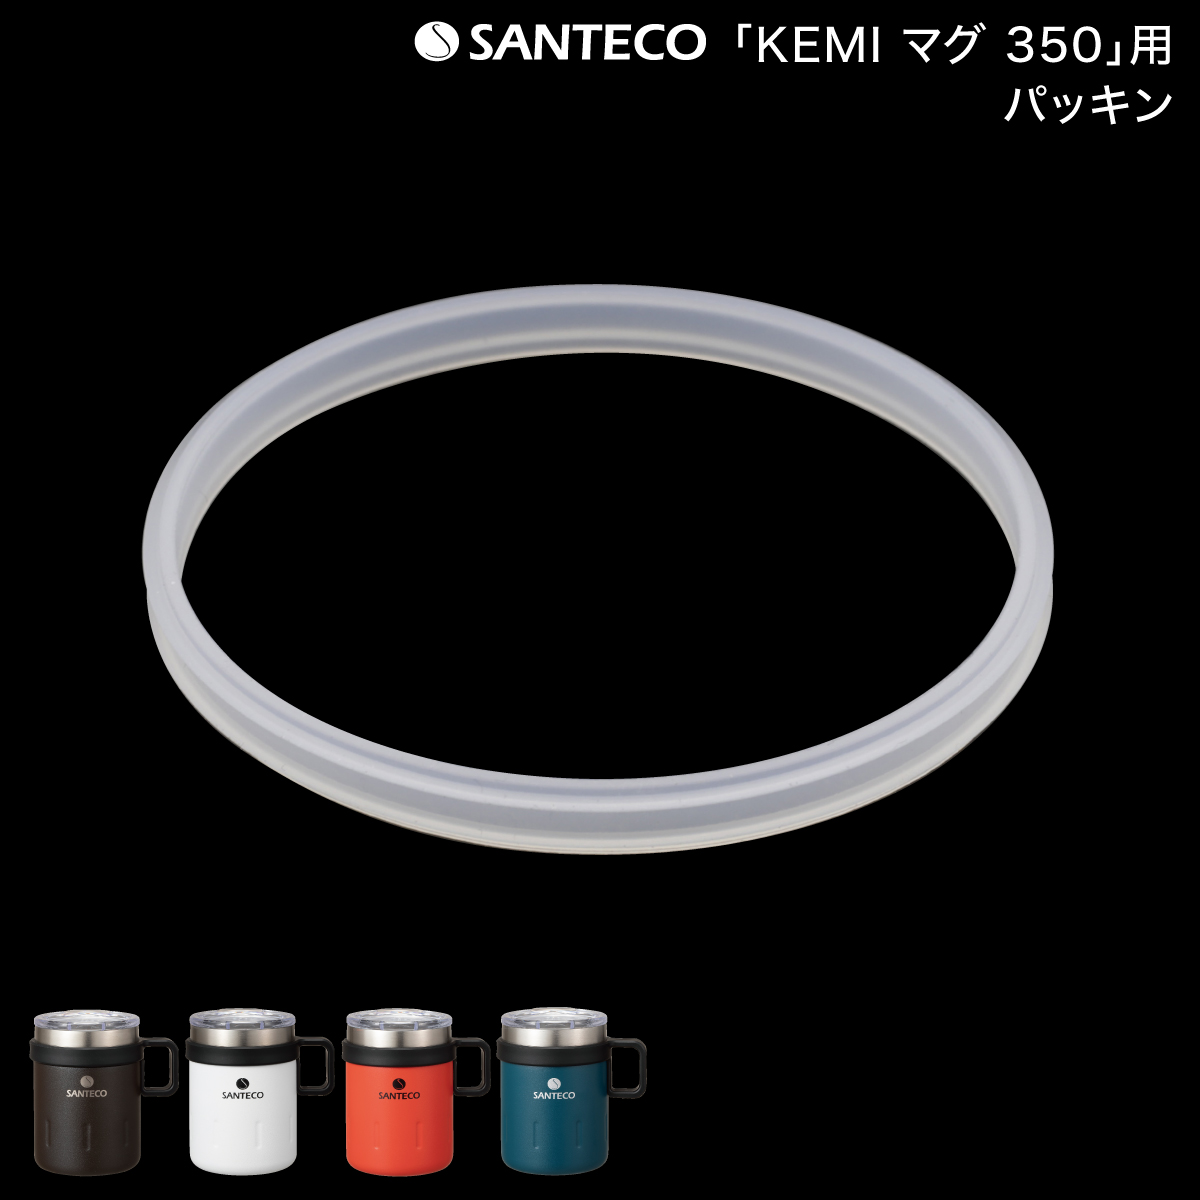 「 SANTECO サンテコ KEMI マグ 350 」「22 スヌーピータンブラー」専用 パッキン